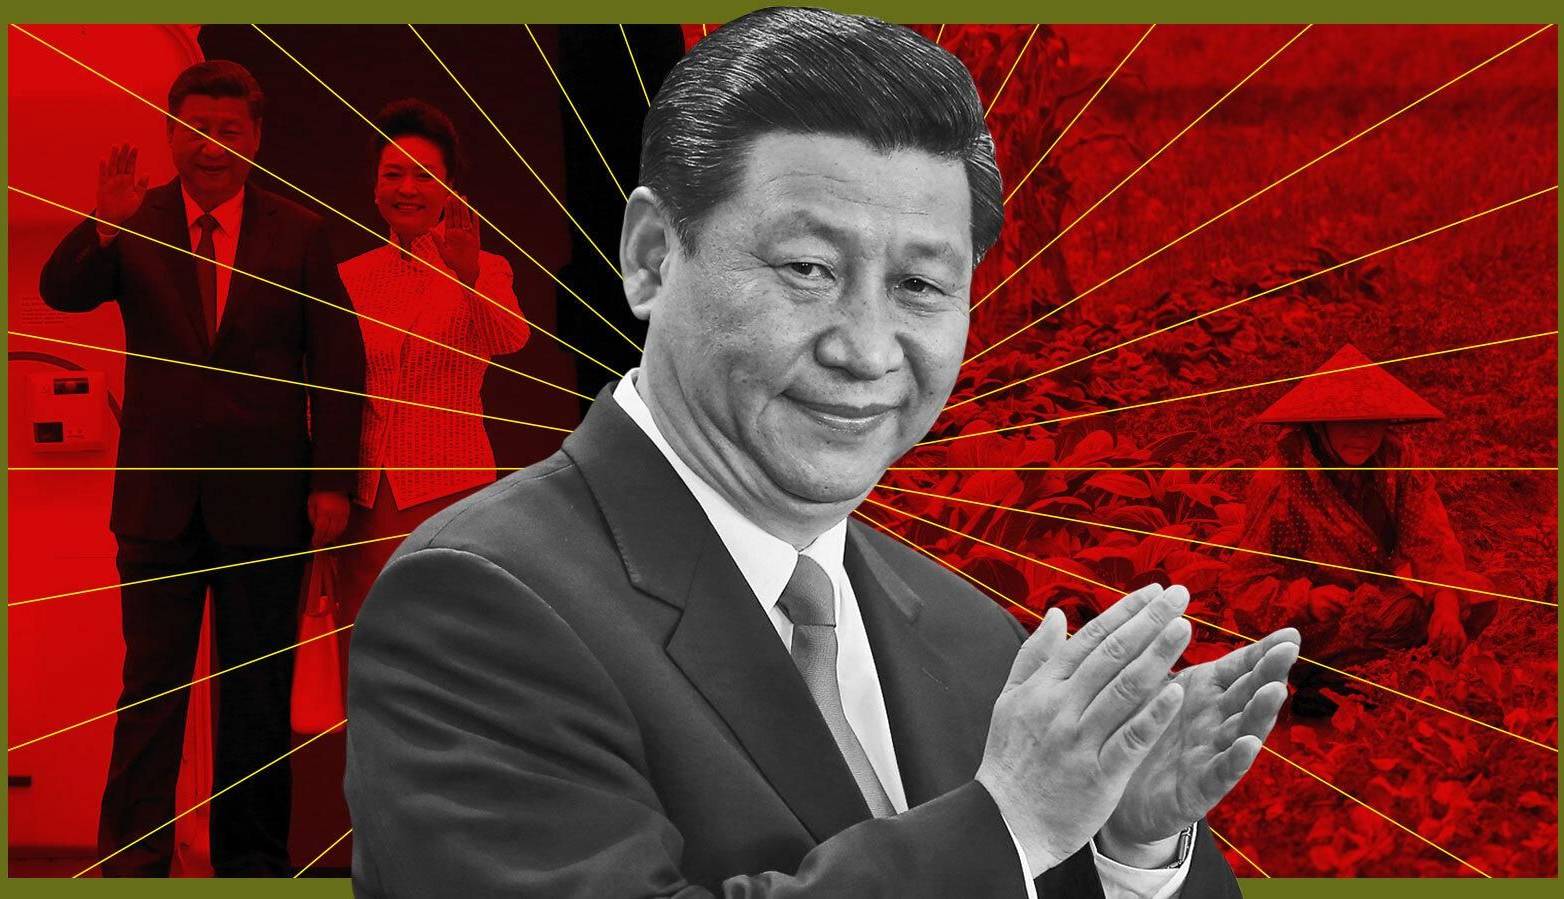 رمزگشایی از برکناری های مقامات بلندپایه در چین